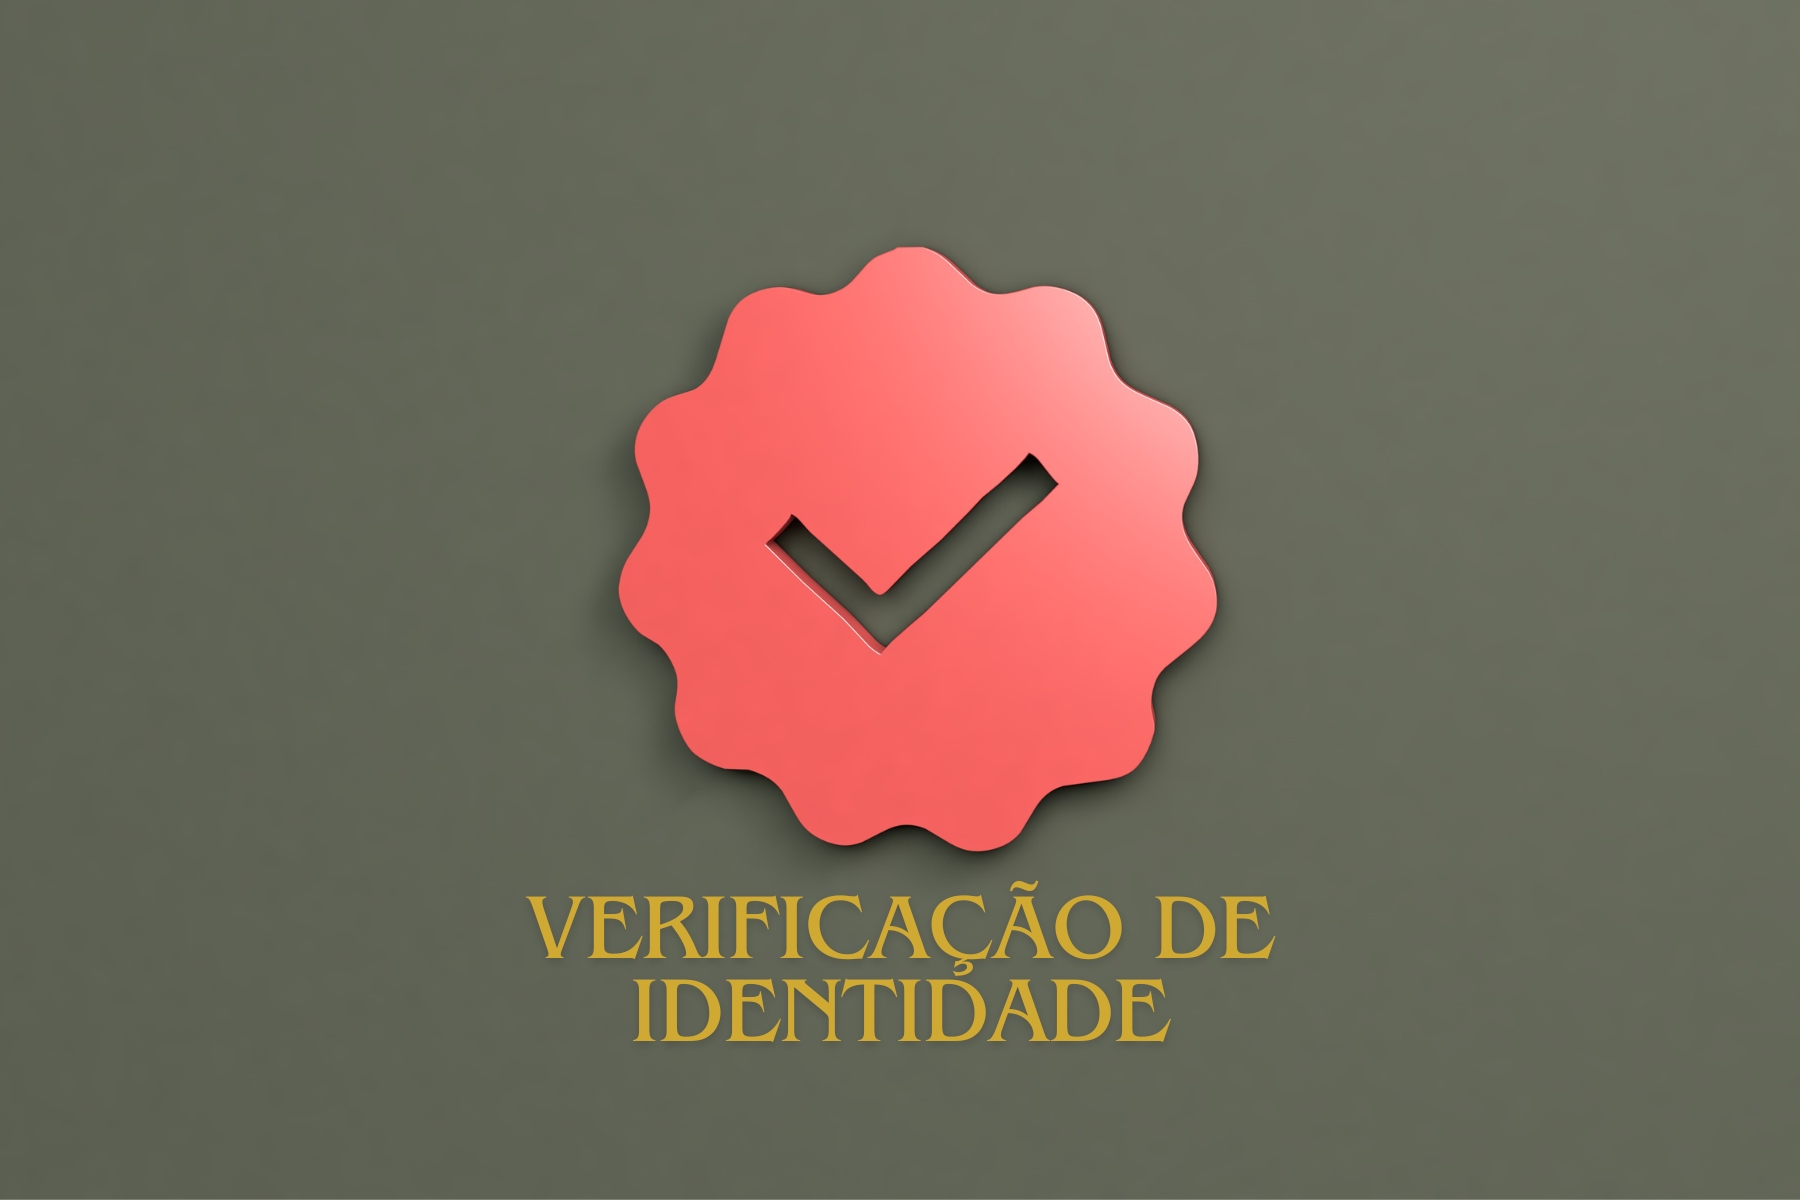 Legitimuz revoluciona o iGaming no Brasil com KYC Sem-Doc: verificação de identidade em 10 segundos, sem documentos físicos. Saiba mais!